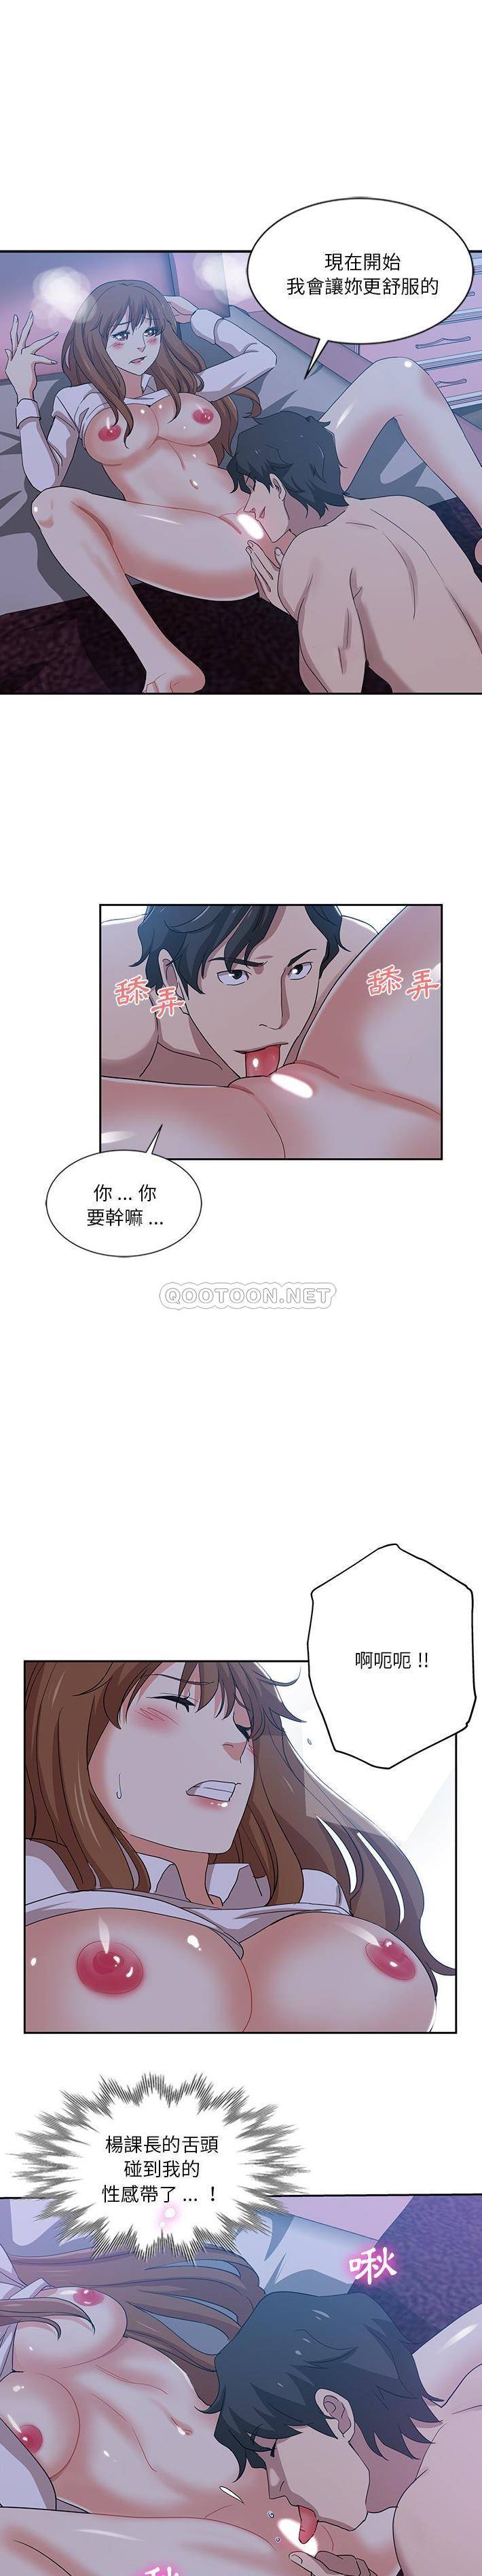 韩国污漫画 危險純友誼 第11话 1